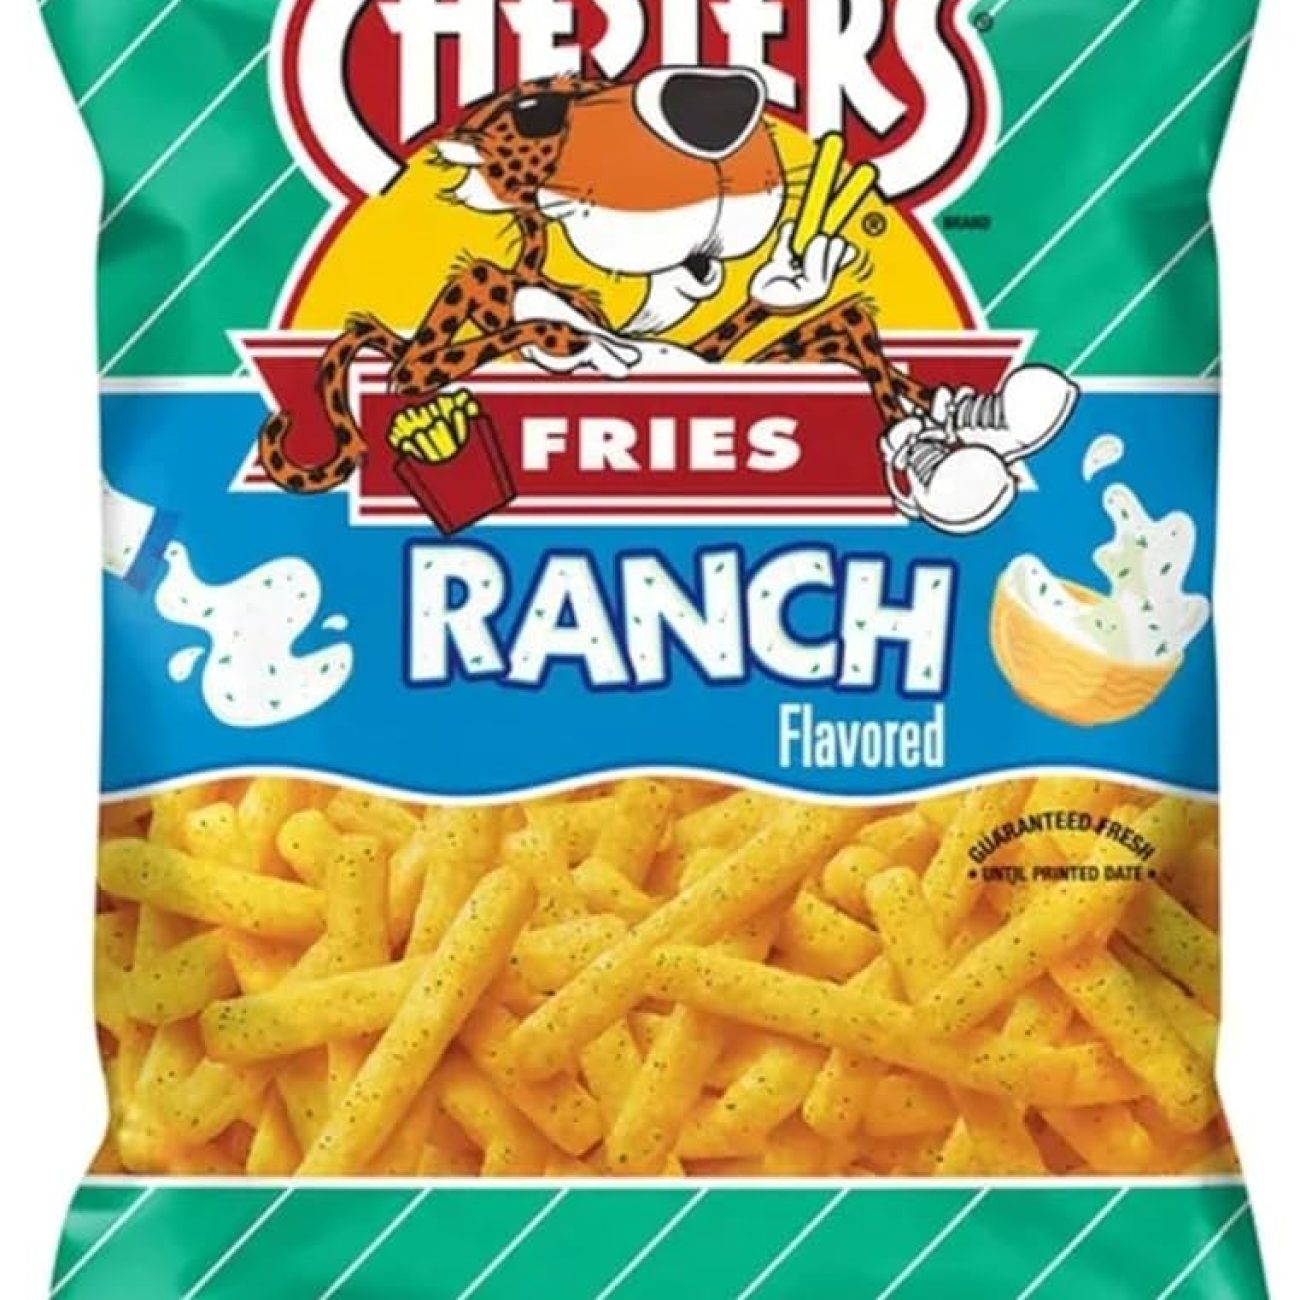 Ranch Cheese Puffs